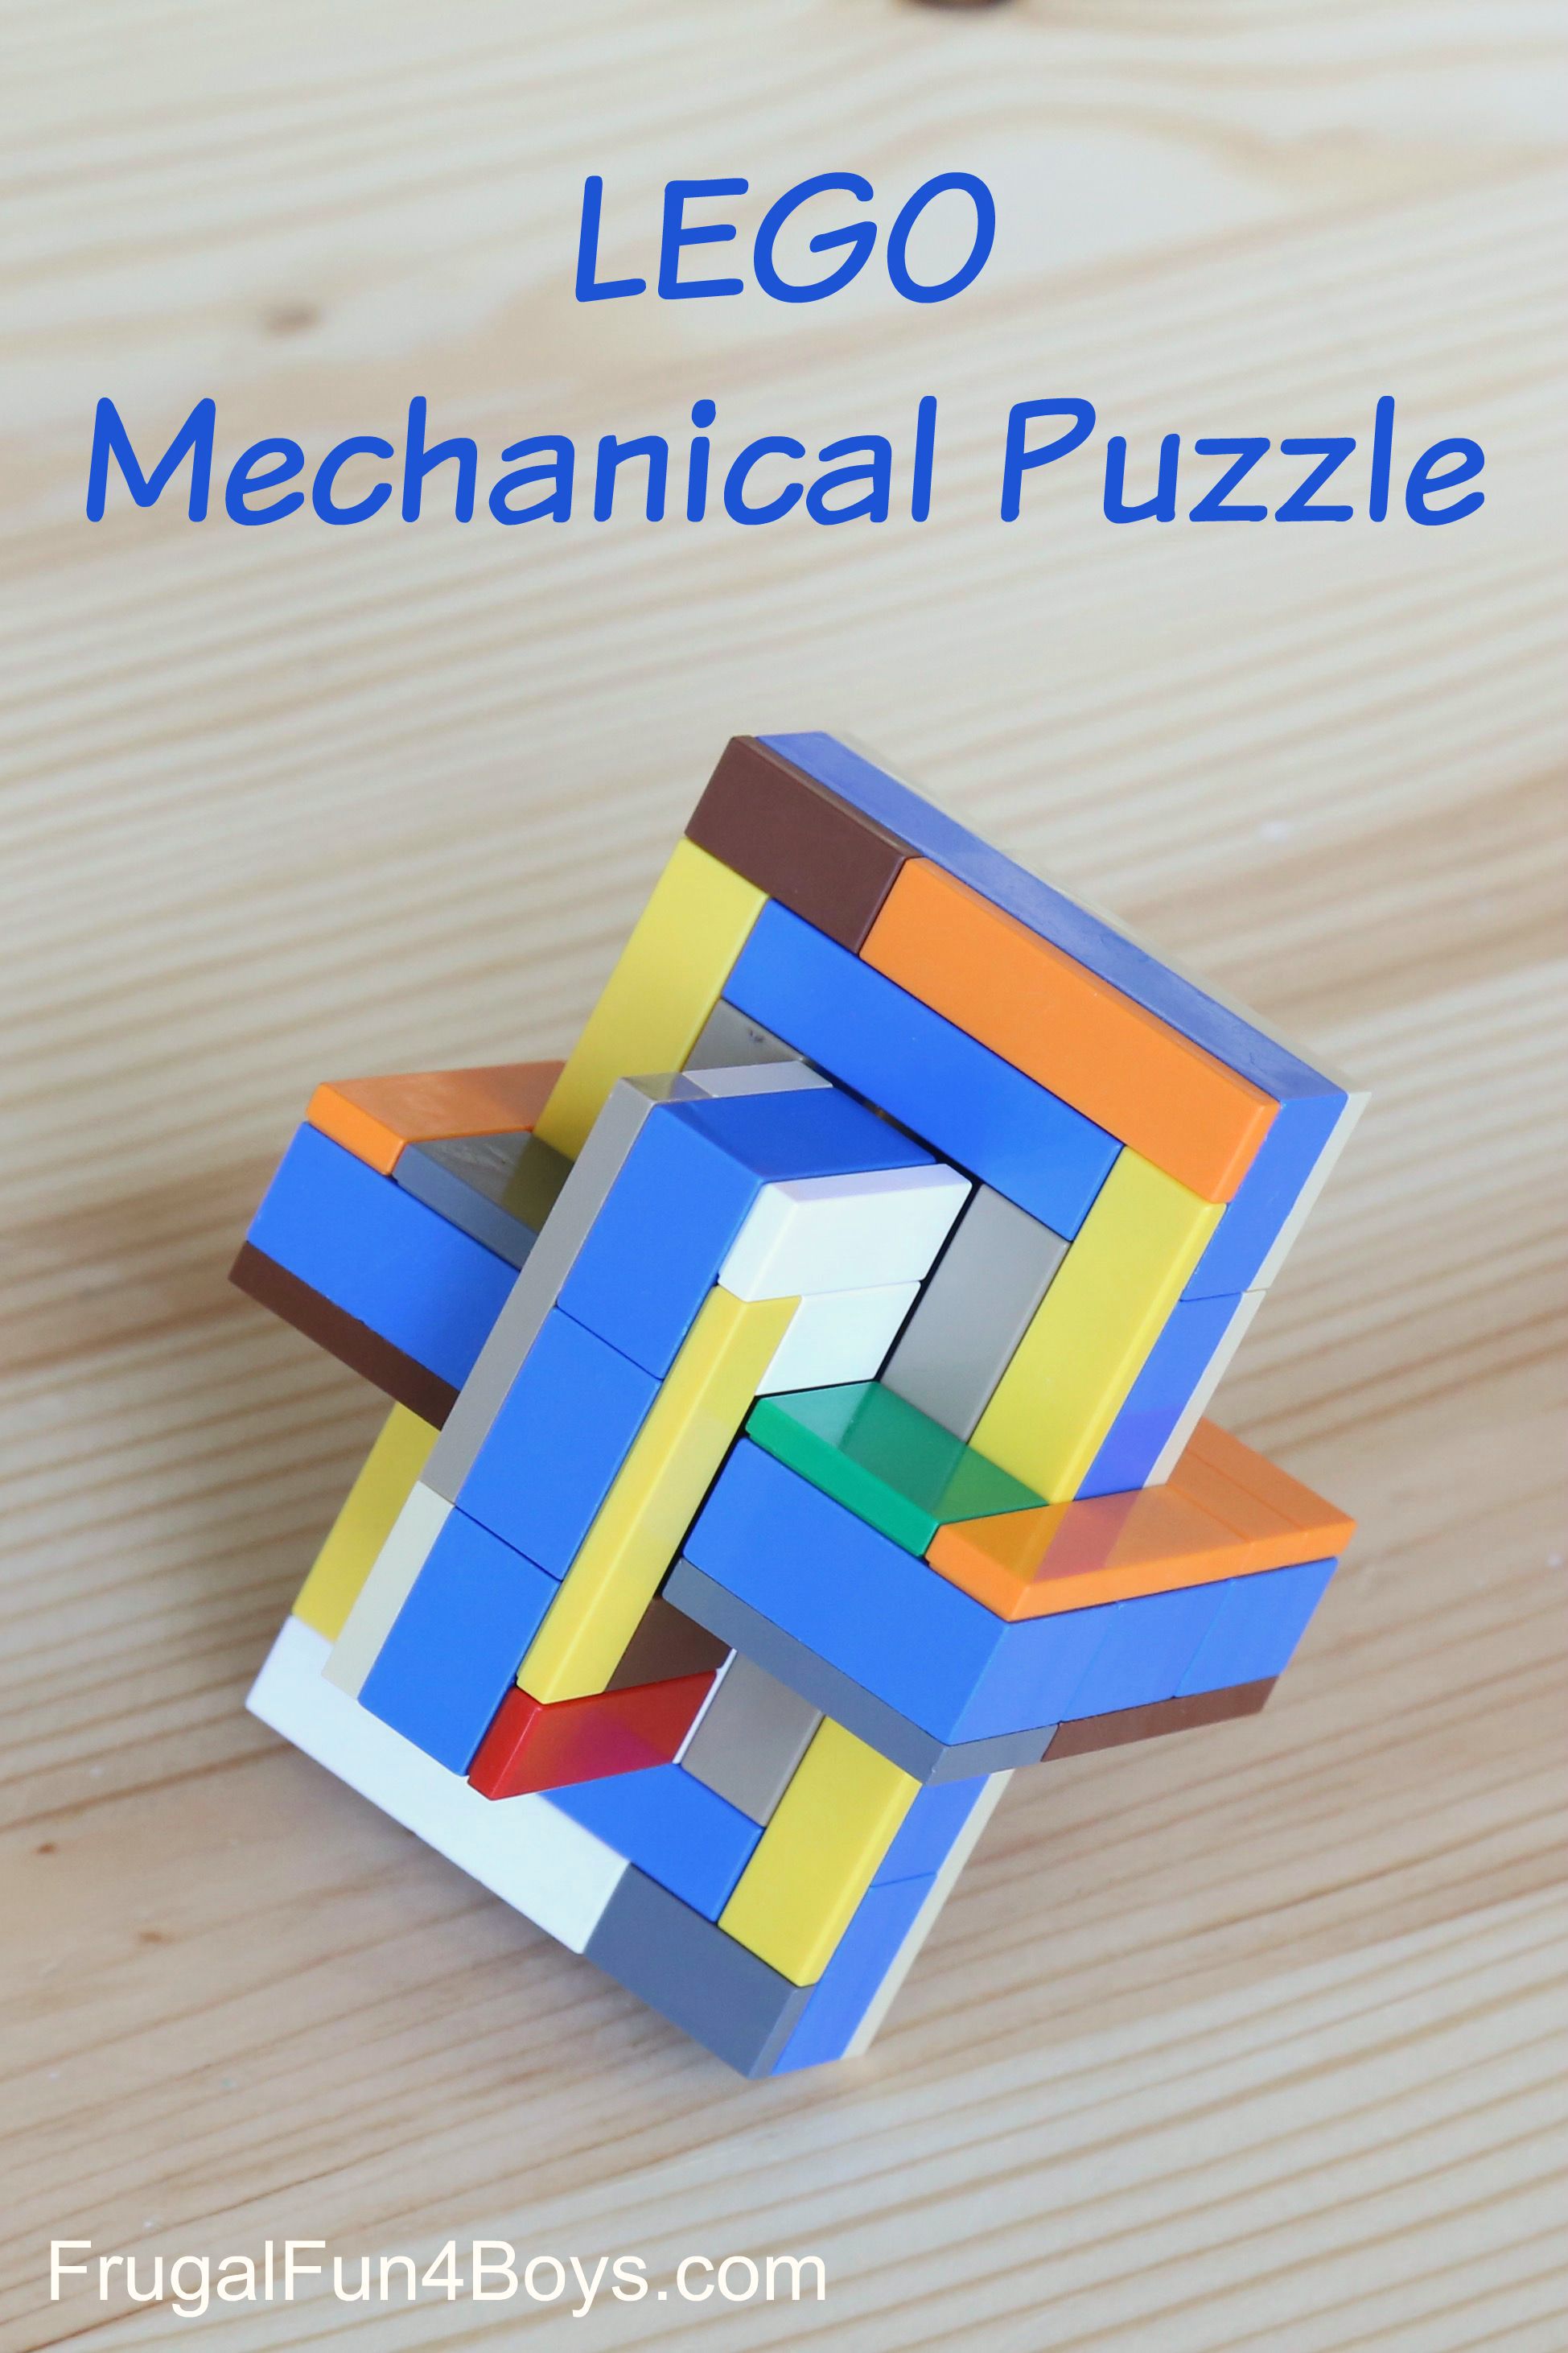 LEGO Mechanical Puzzle